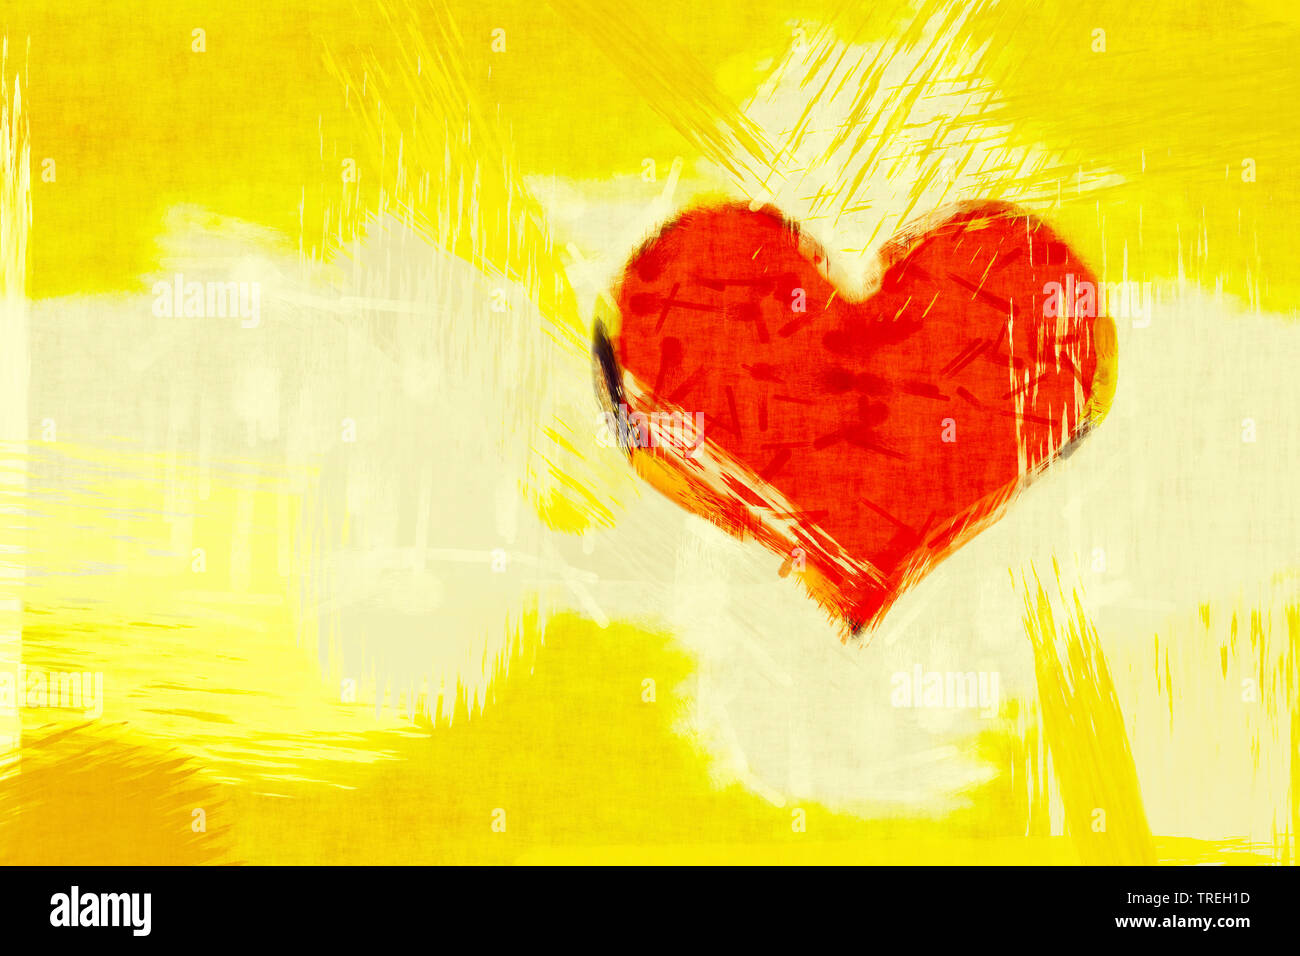 Ordinateur graphique, illustration d'un cœur rouge contre fond jaune Banque D'Images